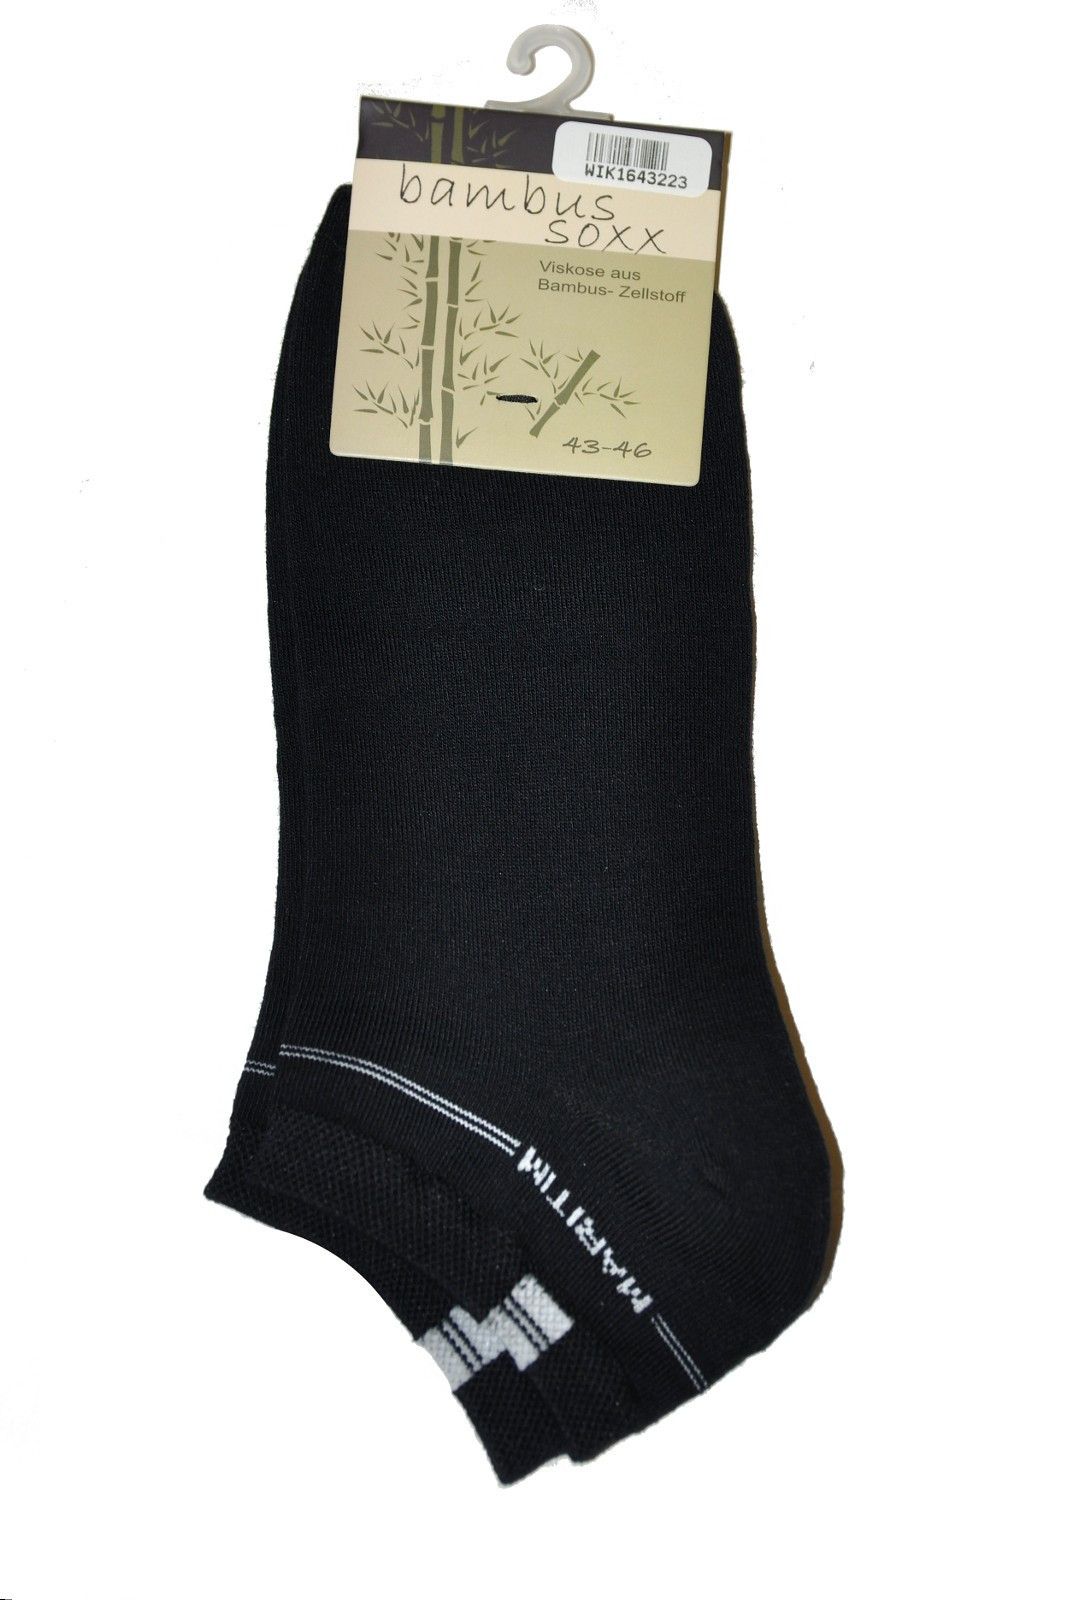 Pánské ponožky WiK 16432 Maritim Style Bambus 39-46 tmavě modrá 43-46